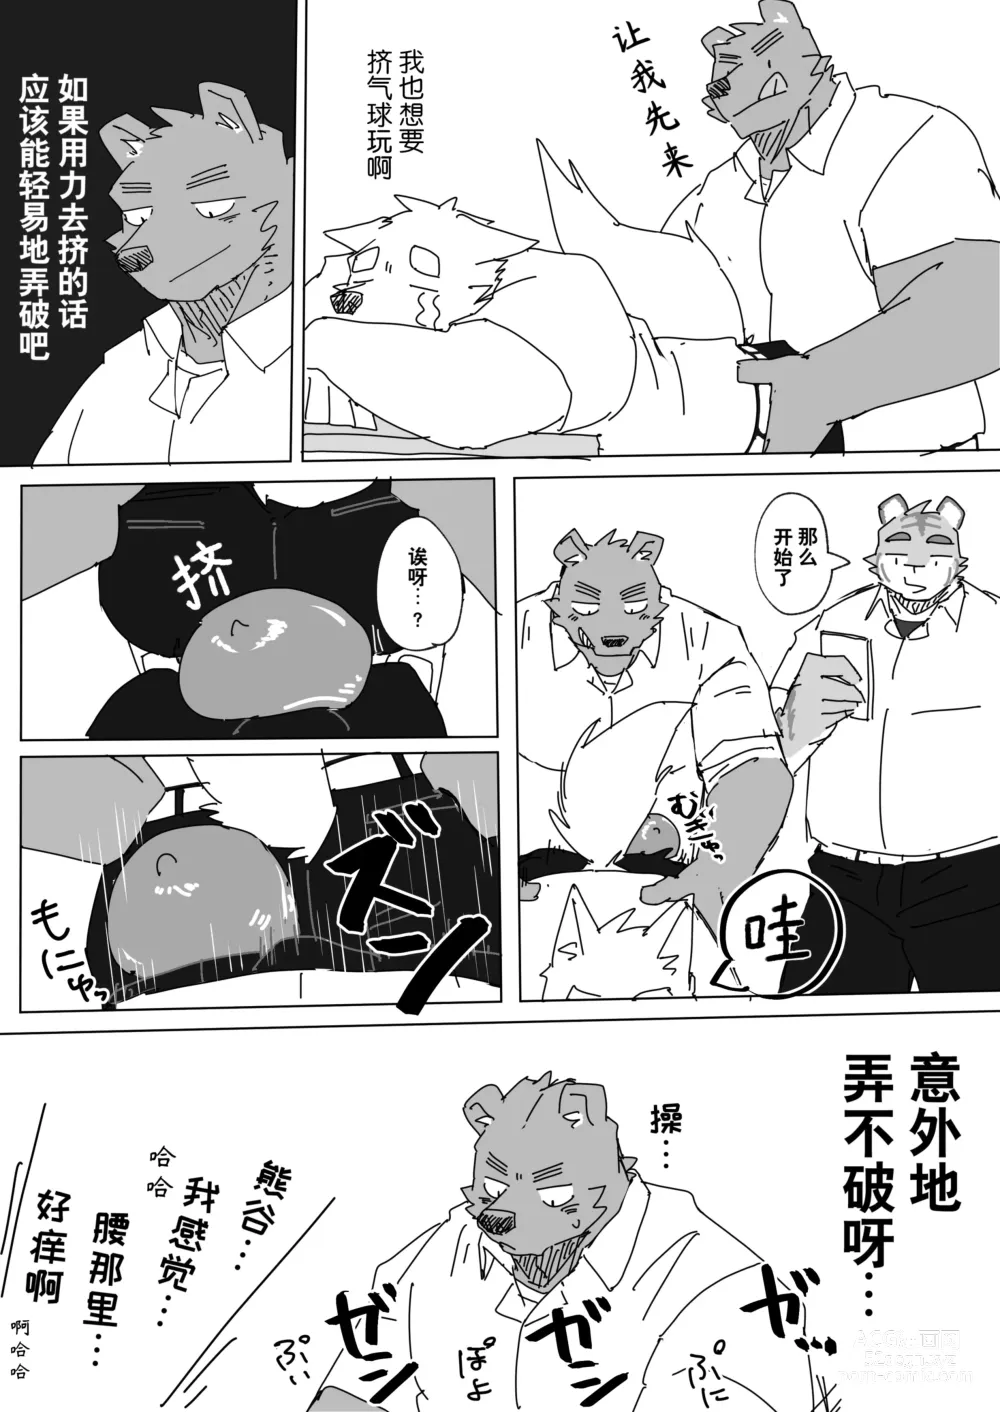 Page 4 of manga 放学后的游戏+后续